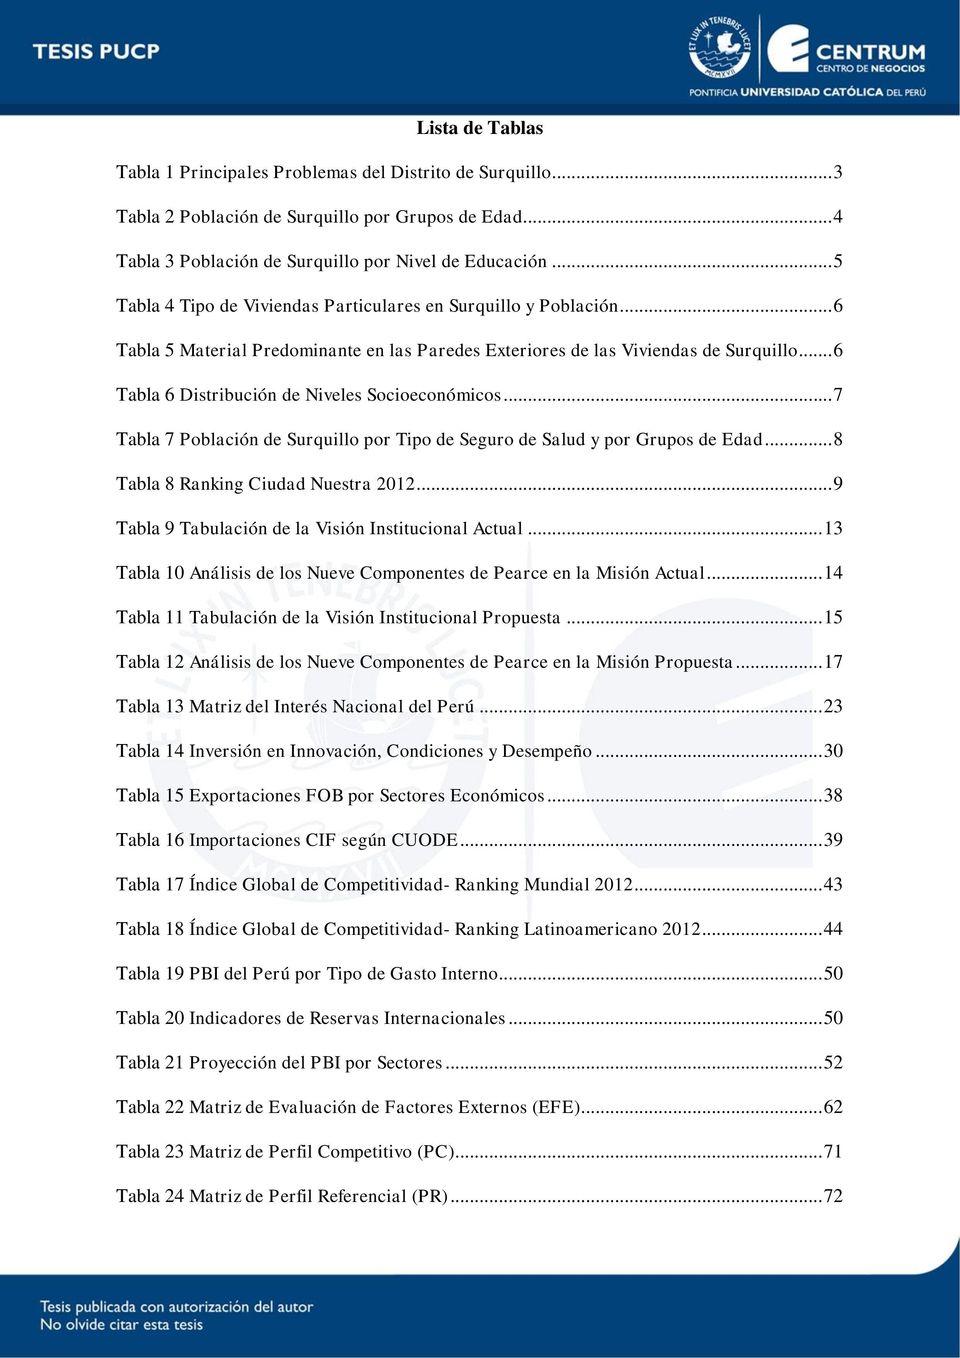 .. 6 Tabla 6 Distribución de Niveles Socioeconómicos... 7 Tabla 7 Población de Surquillo por Tipo de Seguro de Salud y por Grupos de Edad... 8 Tabla 8 Ranking Ciudad Nuestra 2012.